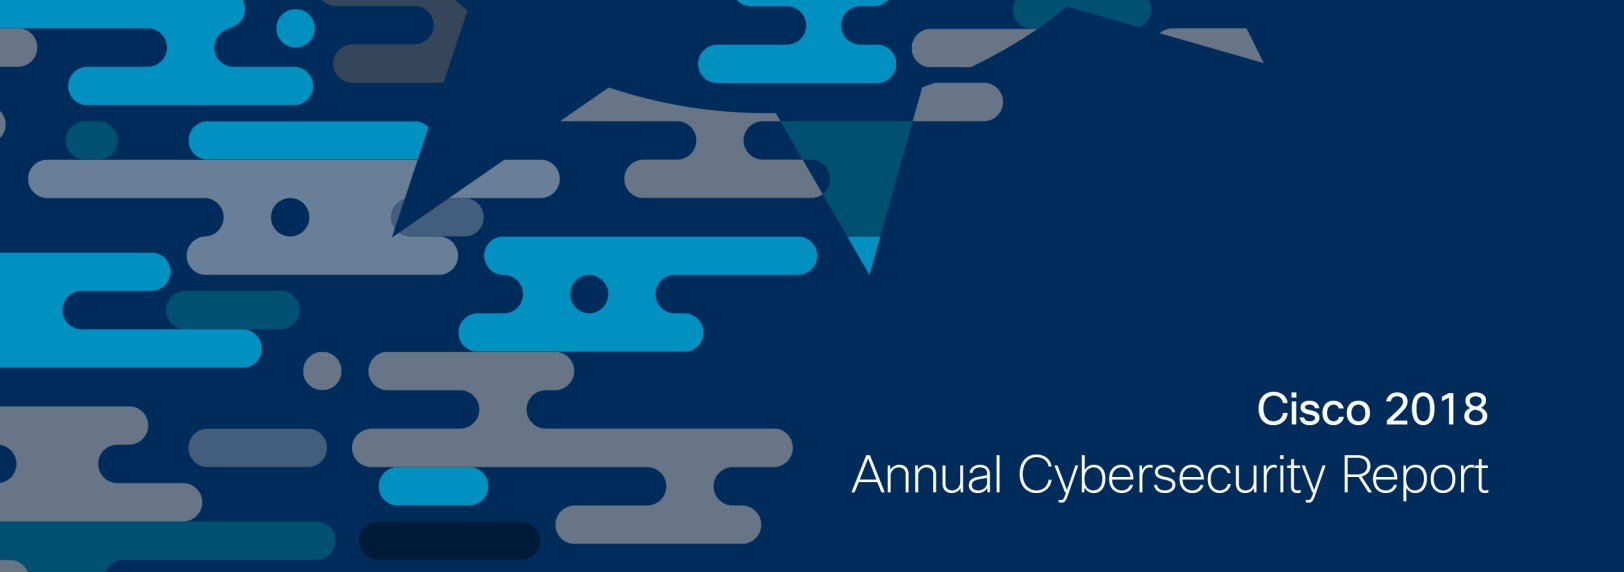 Le rapport annuel sur le Cybersecurity 2018 publié par Cisco